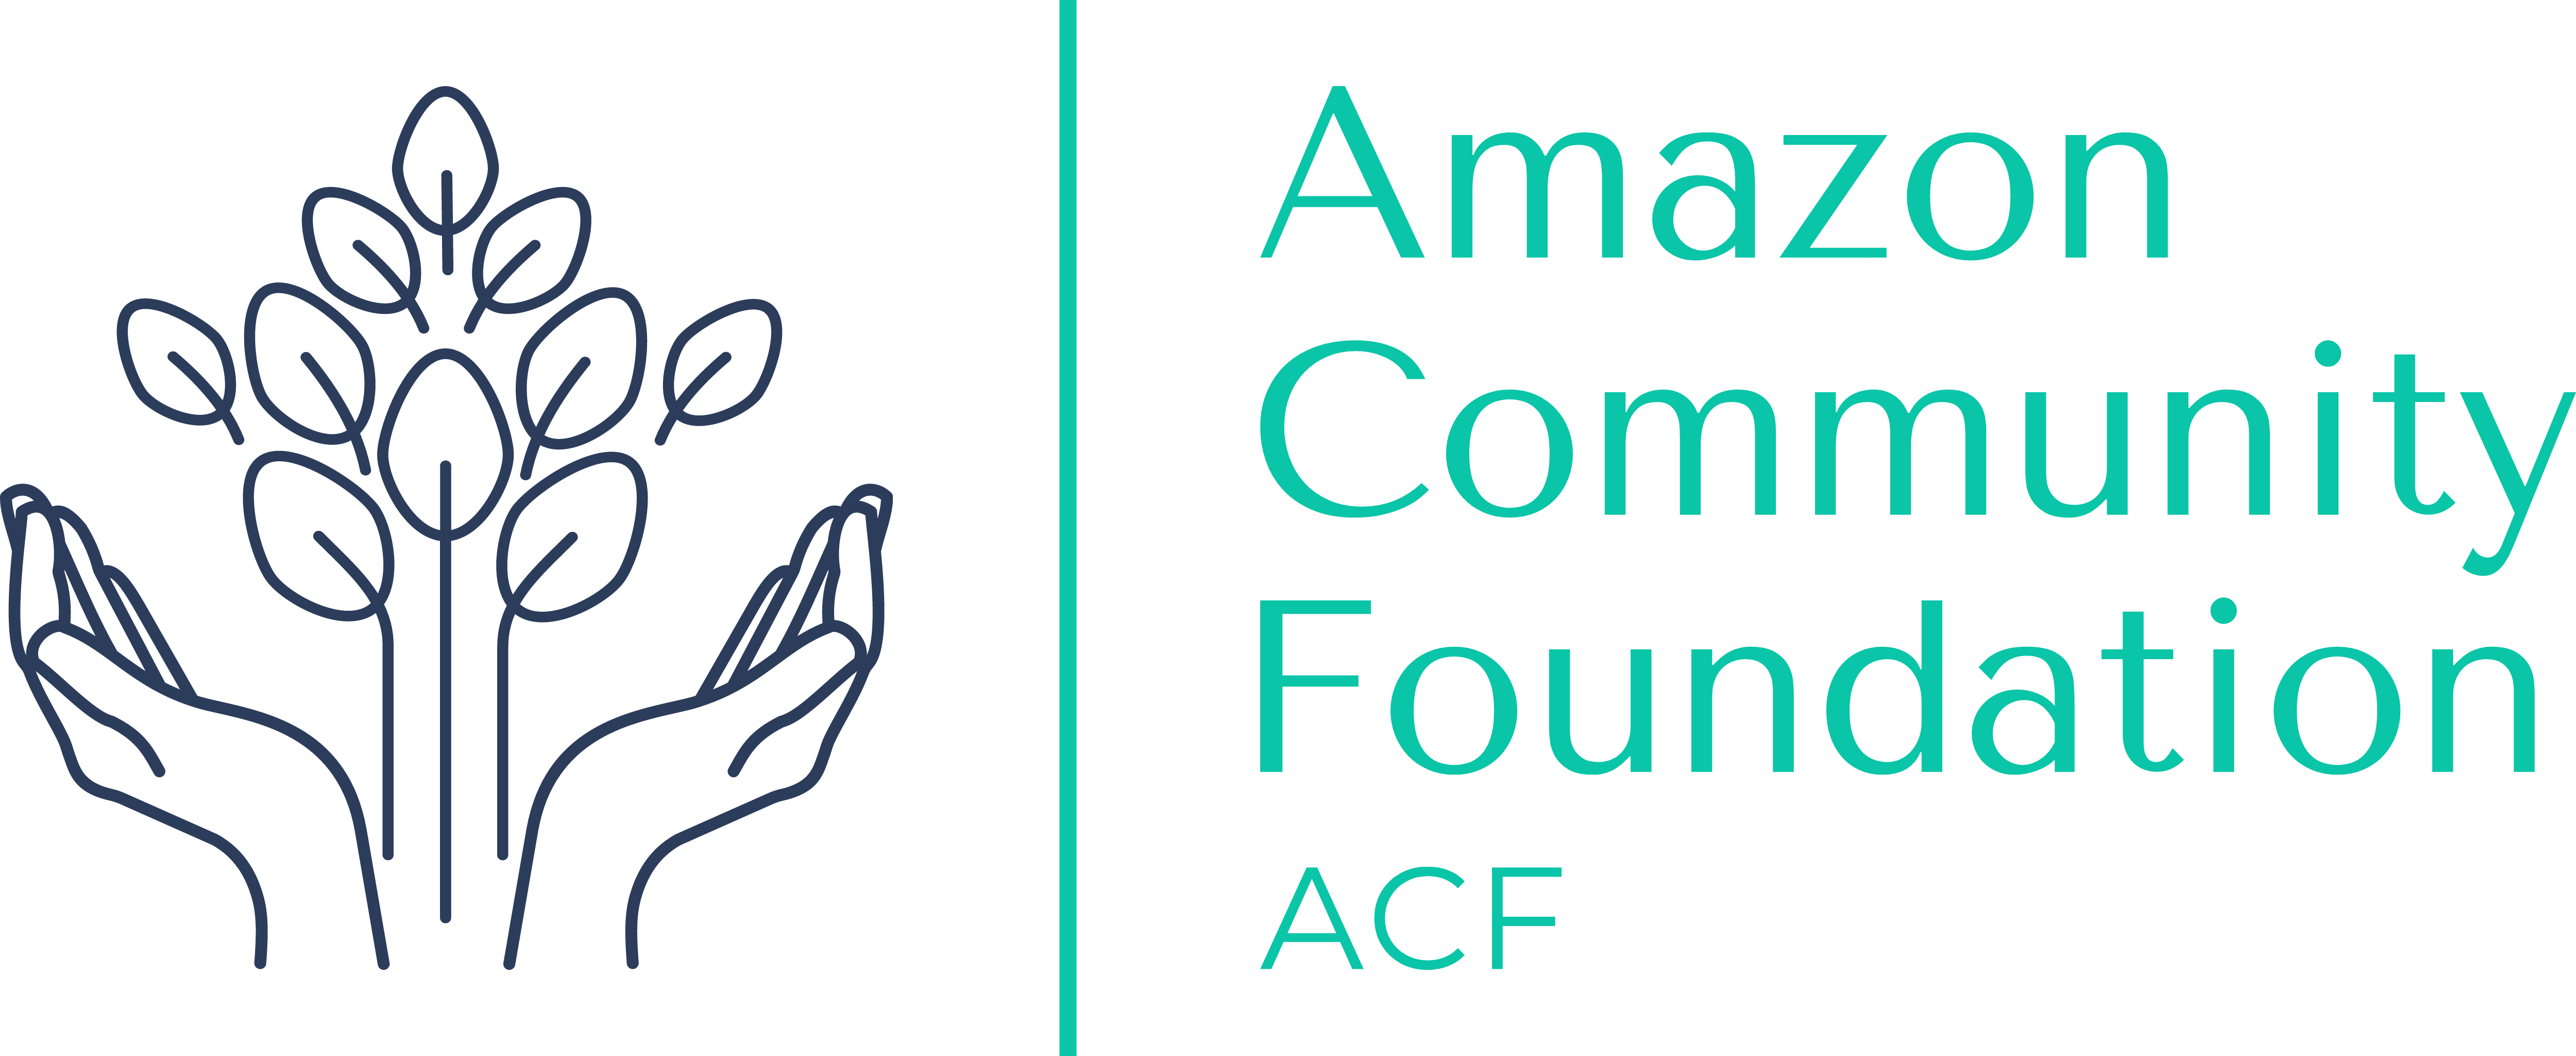 Amazon Community Foundation